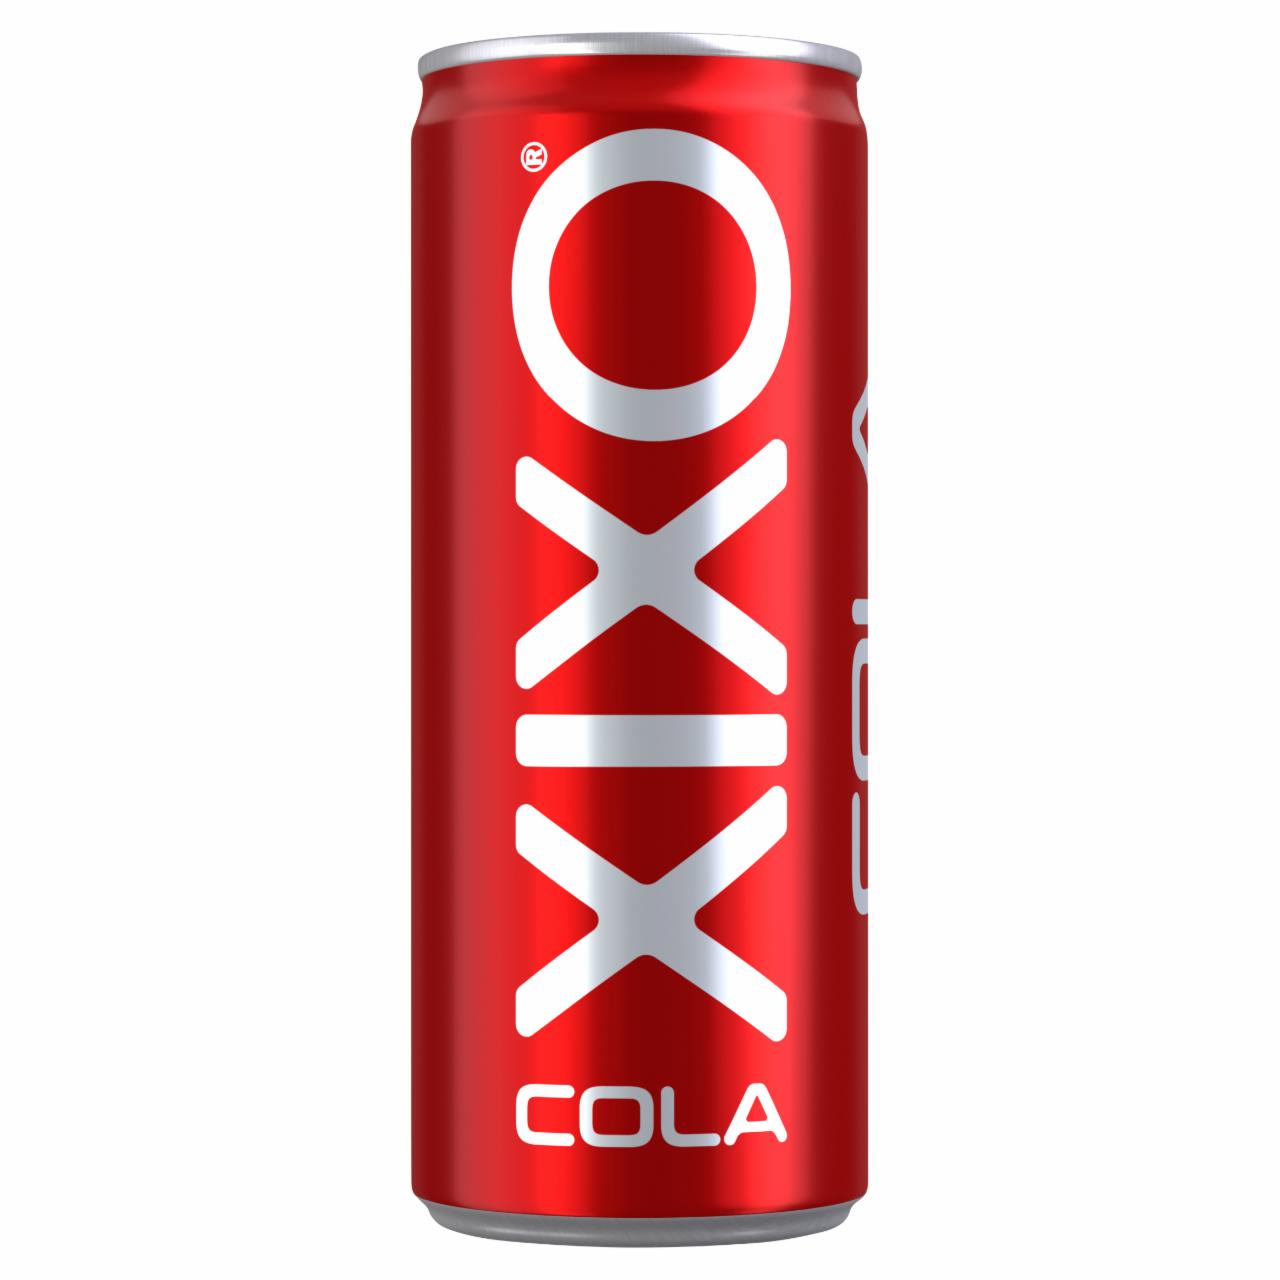 Képek - XIXO Cola kólaízű szénsavas üdítőital cukorral és édesítőszerrel 250 ml